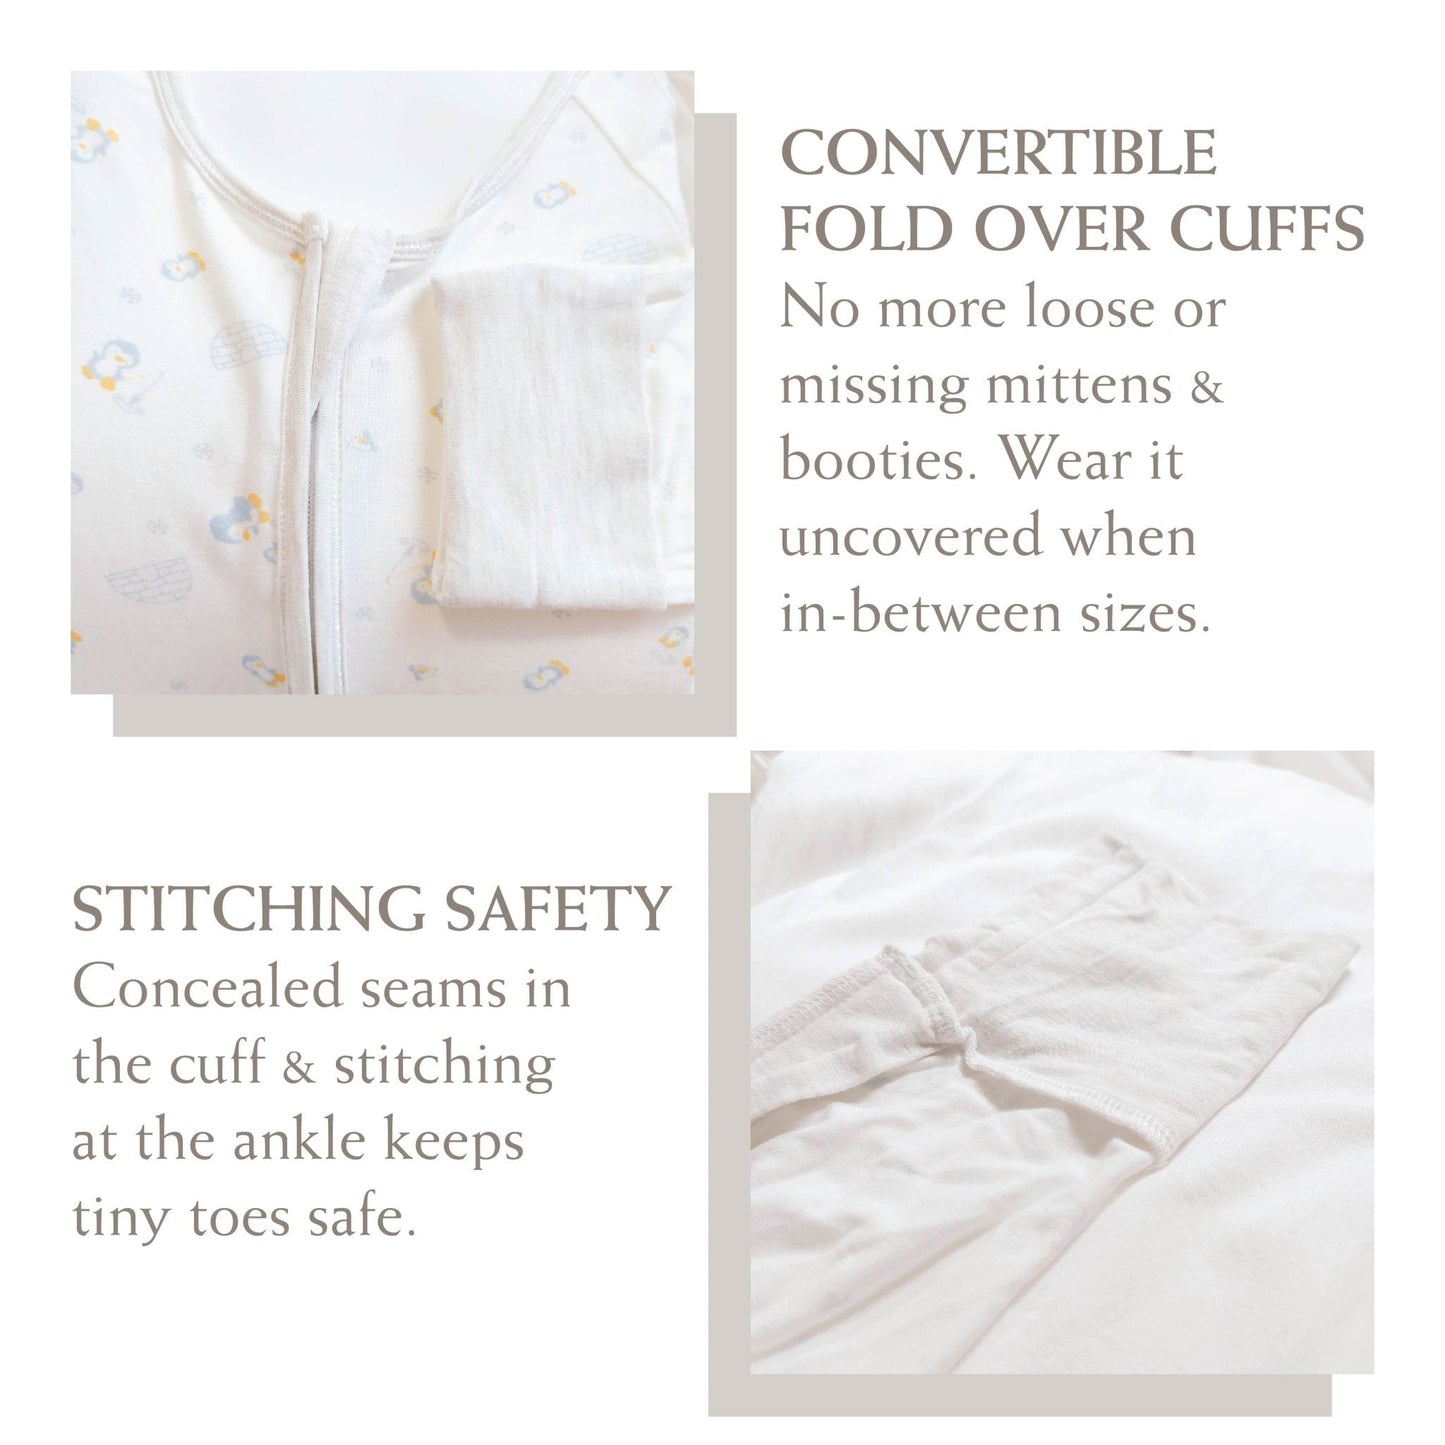 London - Baby Long-sleeved Zipper Sleepsuit (Foldable Mittens & Footies)